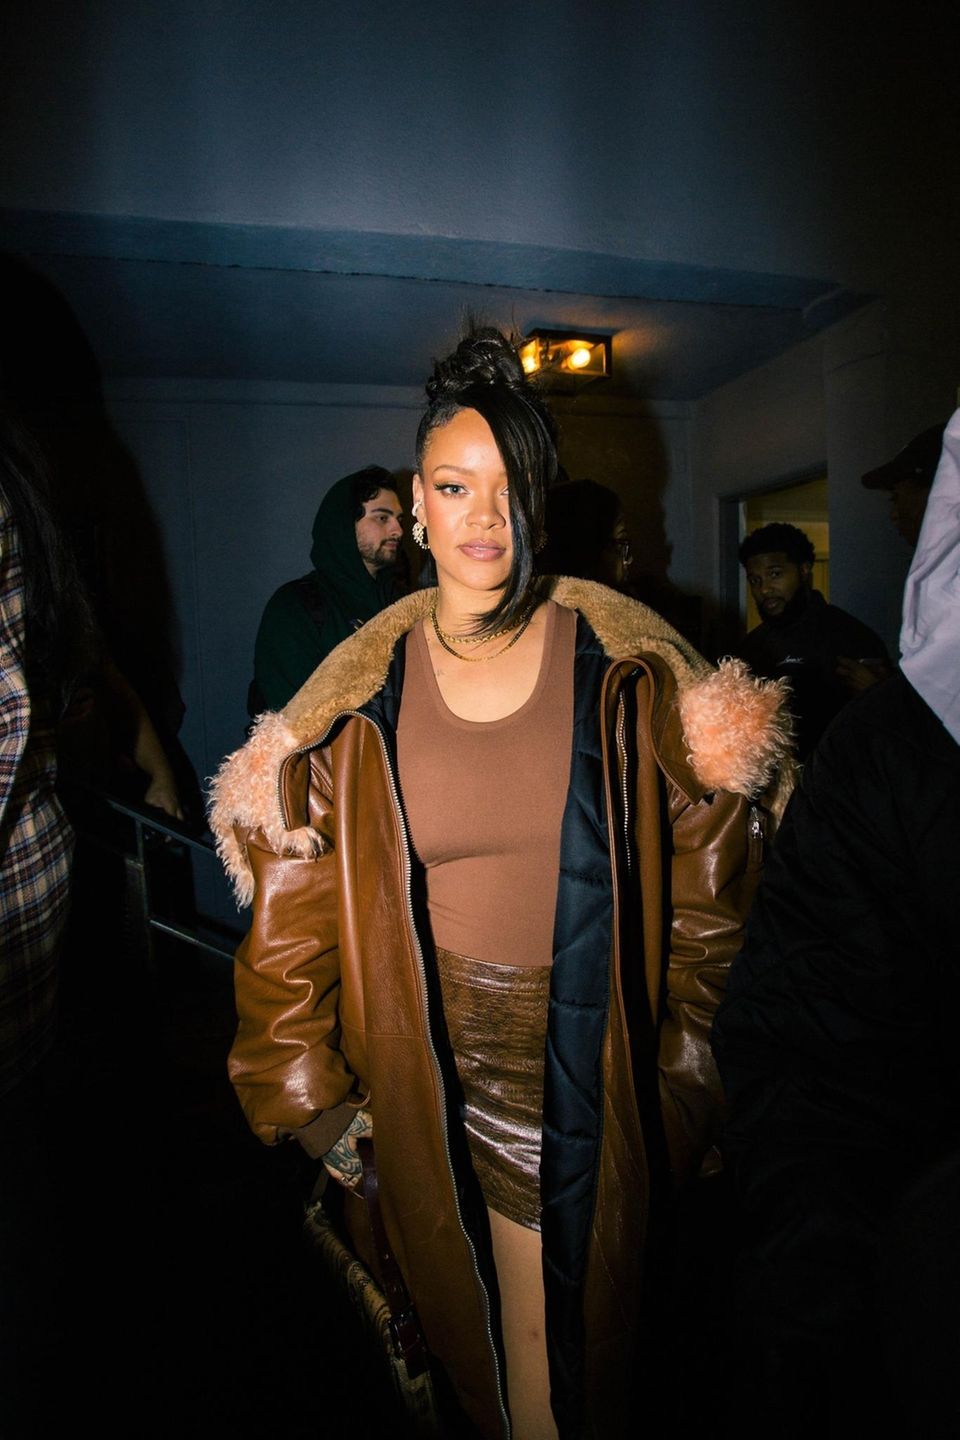 Sängerin Rihanna gehört zu den stylischsten Frauen der Welt. Das stellt sie mal wieder bei der einer Party von Amazon Music unter Beweis. In ihrem All-Over-Braun-Look aus Oversized-Lederock, Ledermini und Tanktop sieht die Designerin einfach nur super lässig aus.